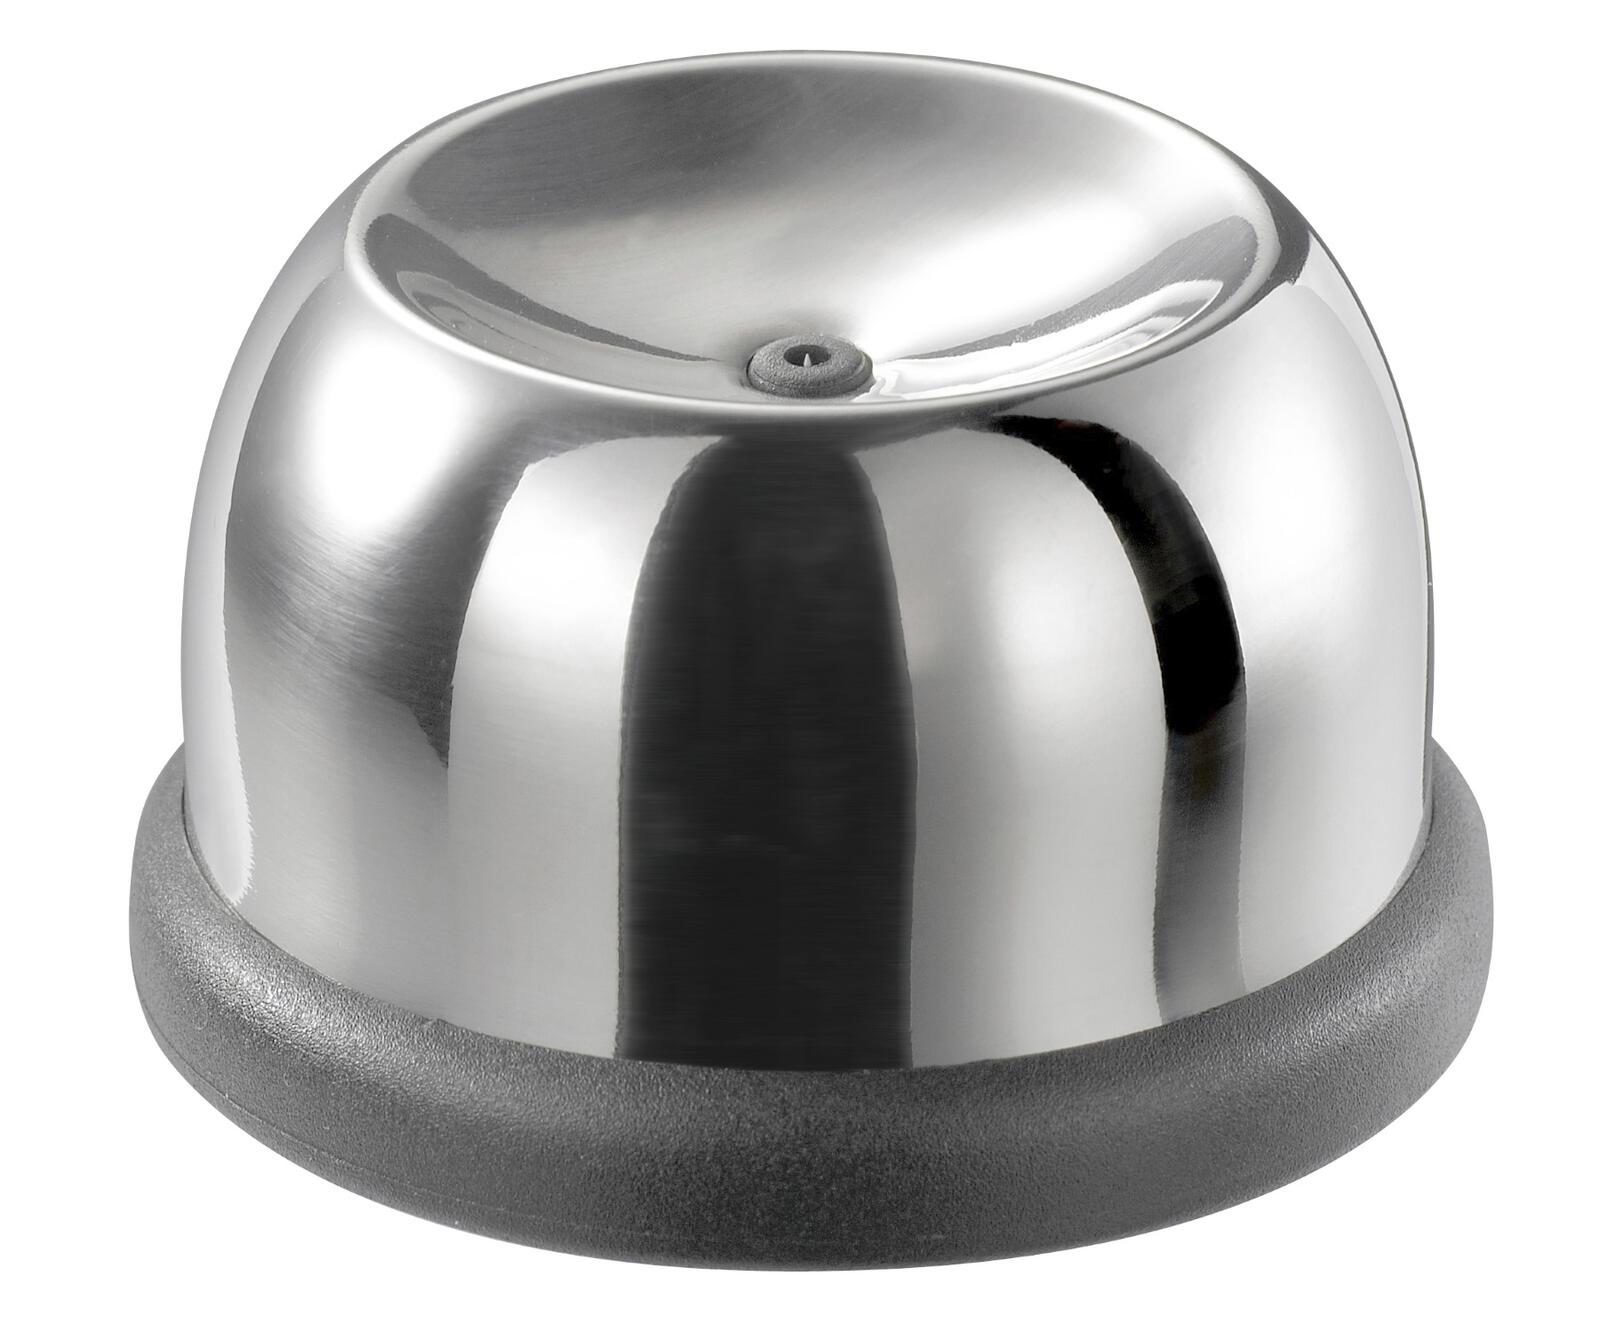 Küchenhelfer Gefu aus Kunststoff in Silber Schwarz GEFU Eier-Piekser hochwertiger Kunststoff & Edelstahl